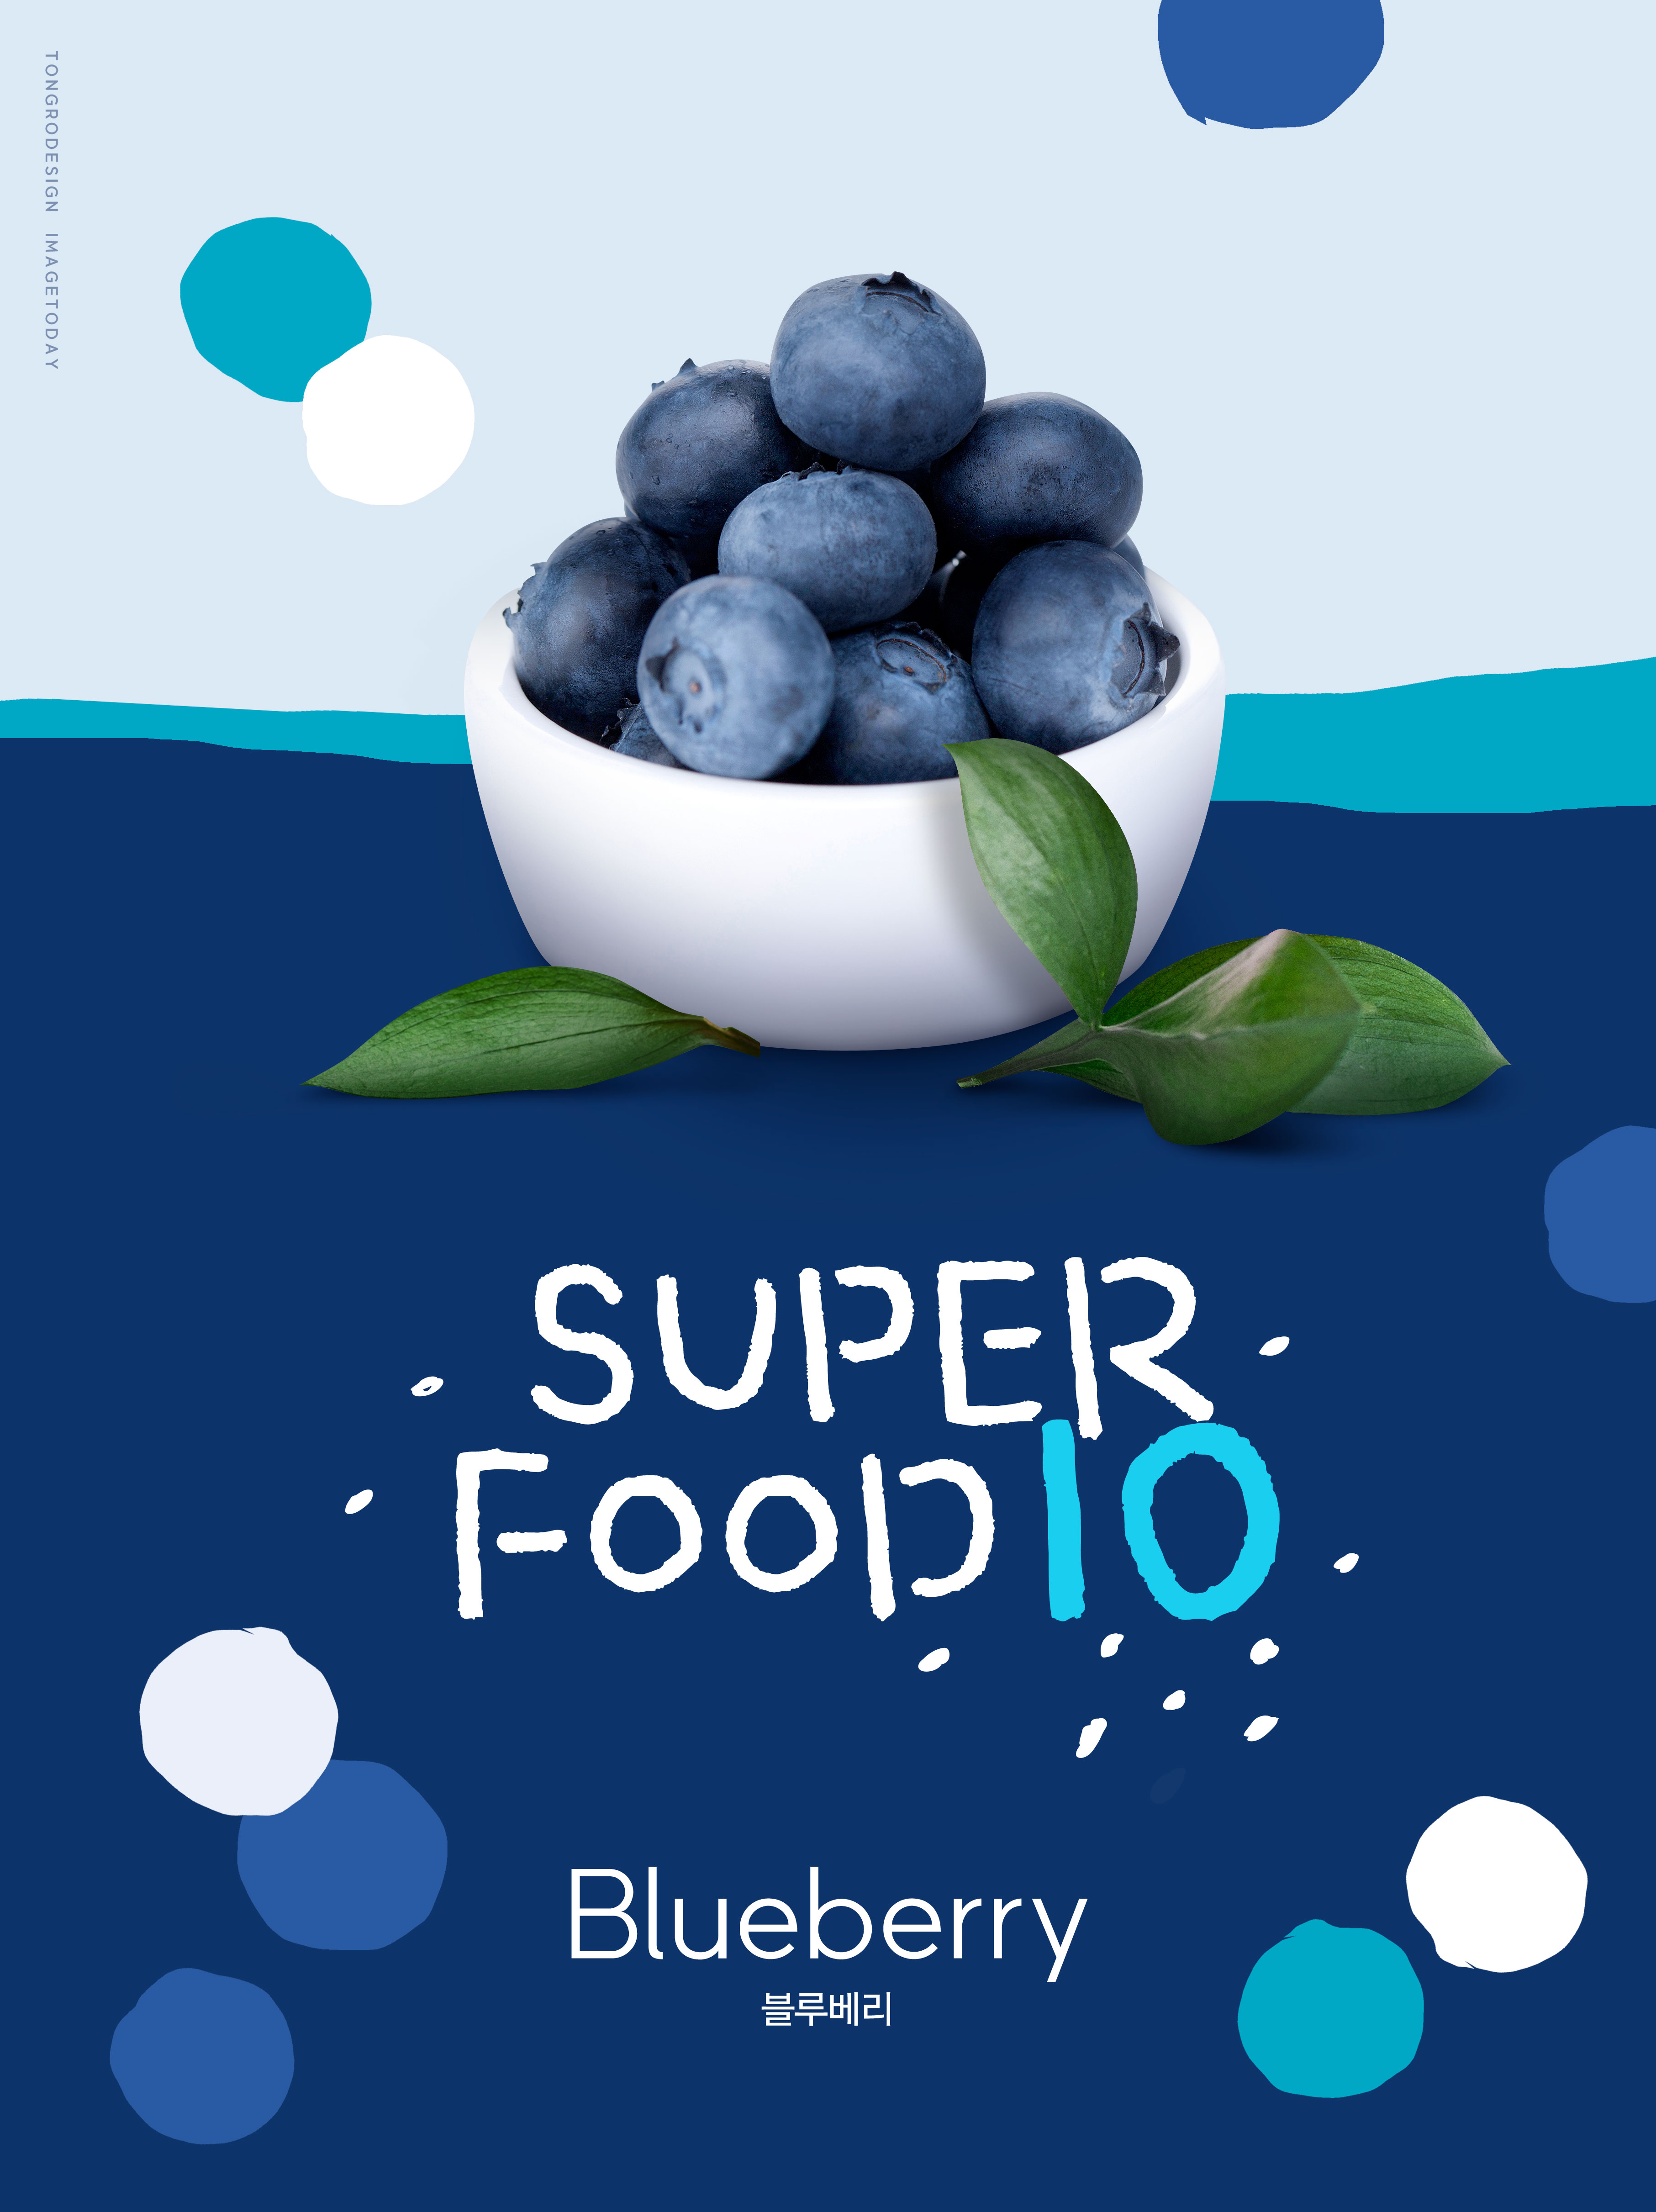 蓝莓水果食品宣传海报设计模板插图